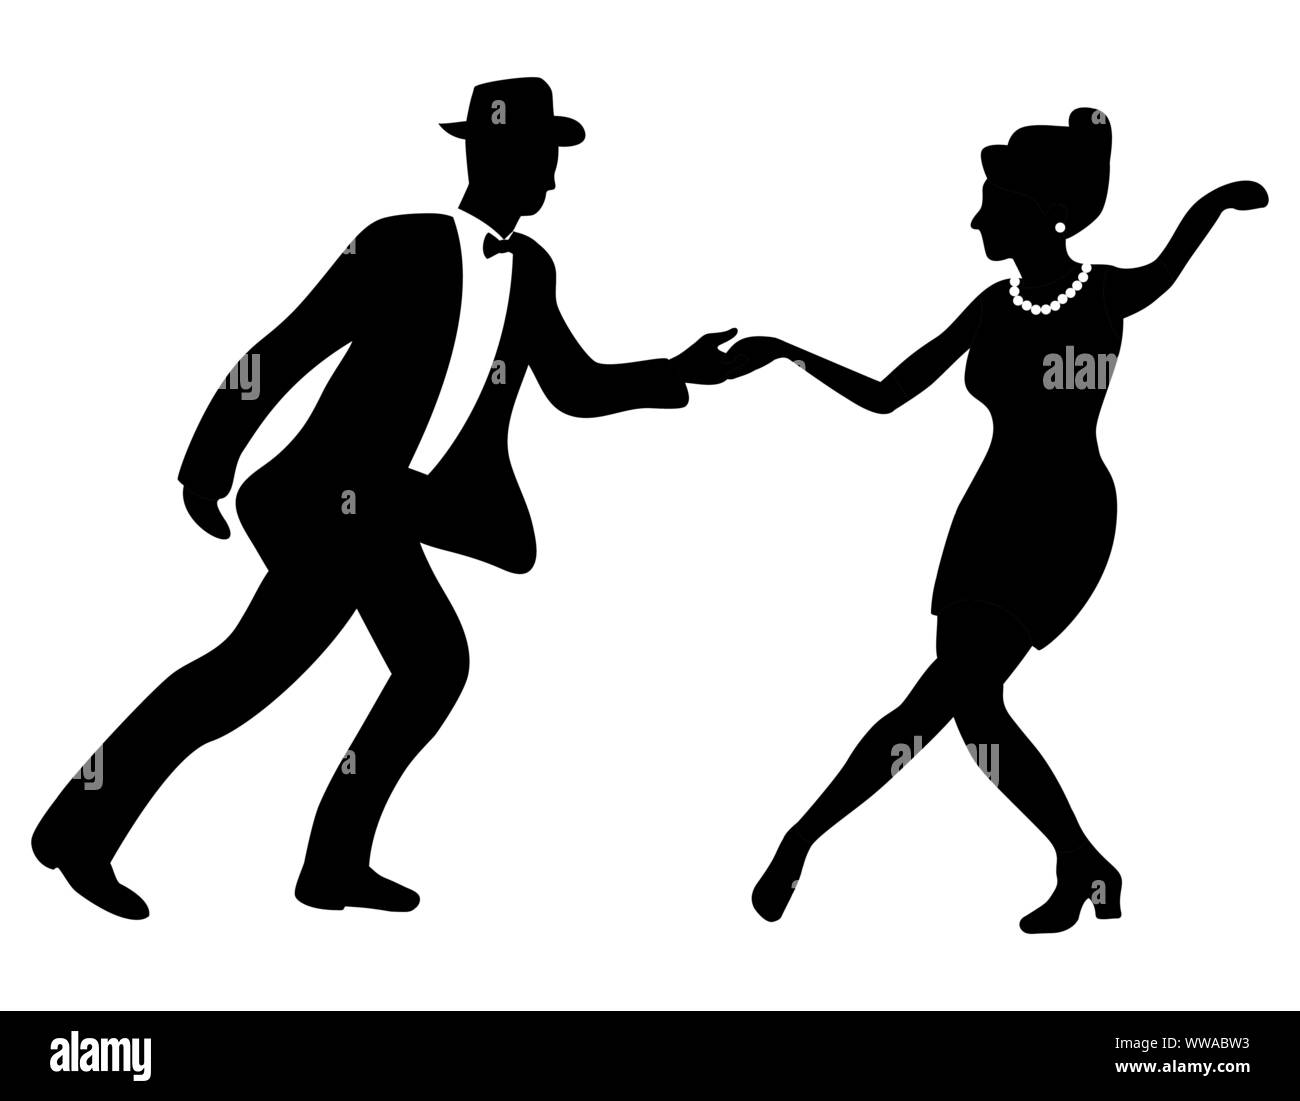 Il ballo di Swing negativo giovane silhouette. I colori nero e bianco. Negli anni quaranta e stile anni trenta. Donna con perle e uomo con il filtro bow tie e hat. Illustrazione Vettoriale